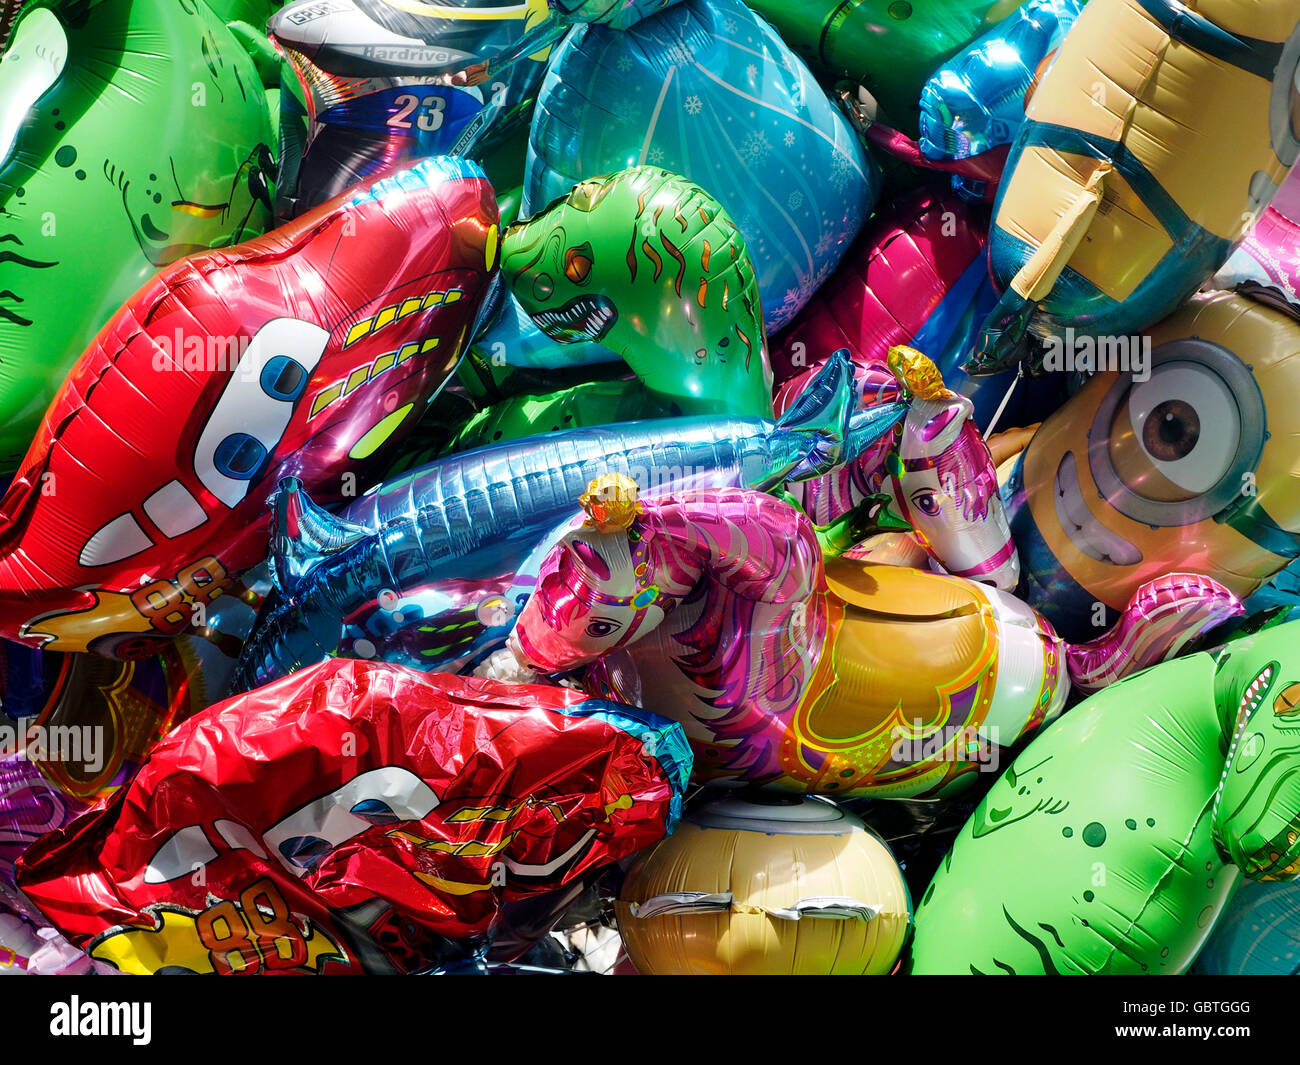 Image libre: hélium, plastique, ballon, jouet, traditionnel, lapin, art,  Fantasy, divertissement, coloré